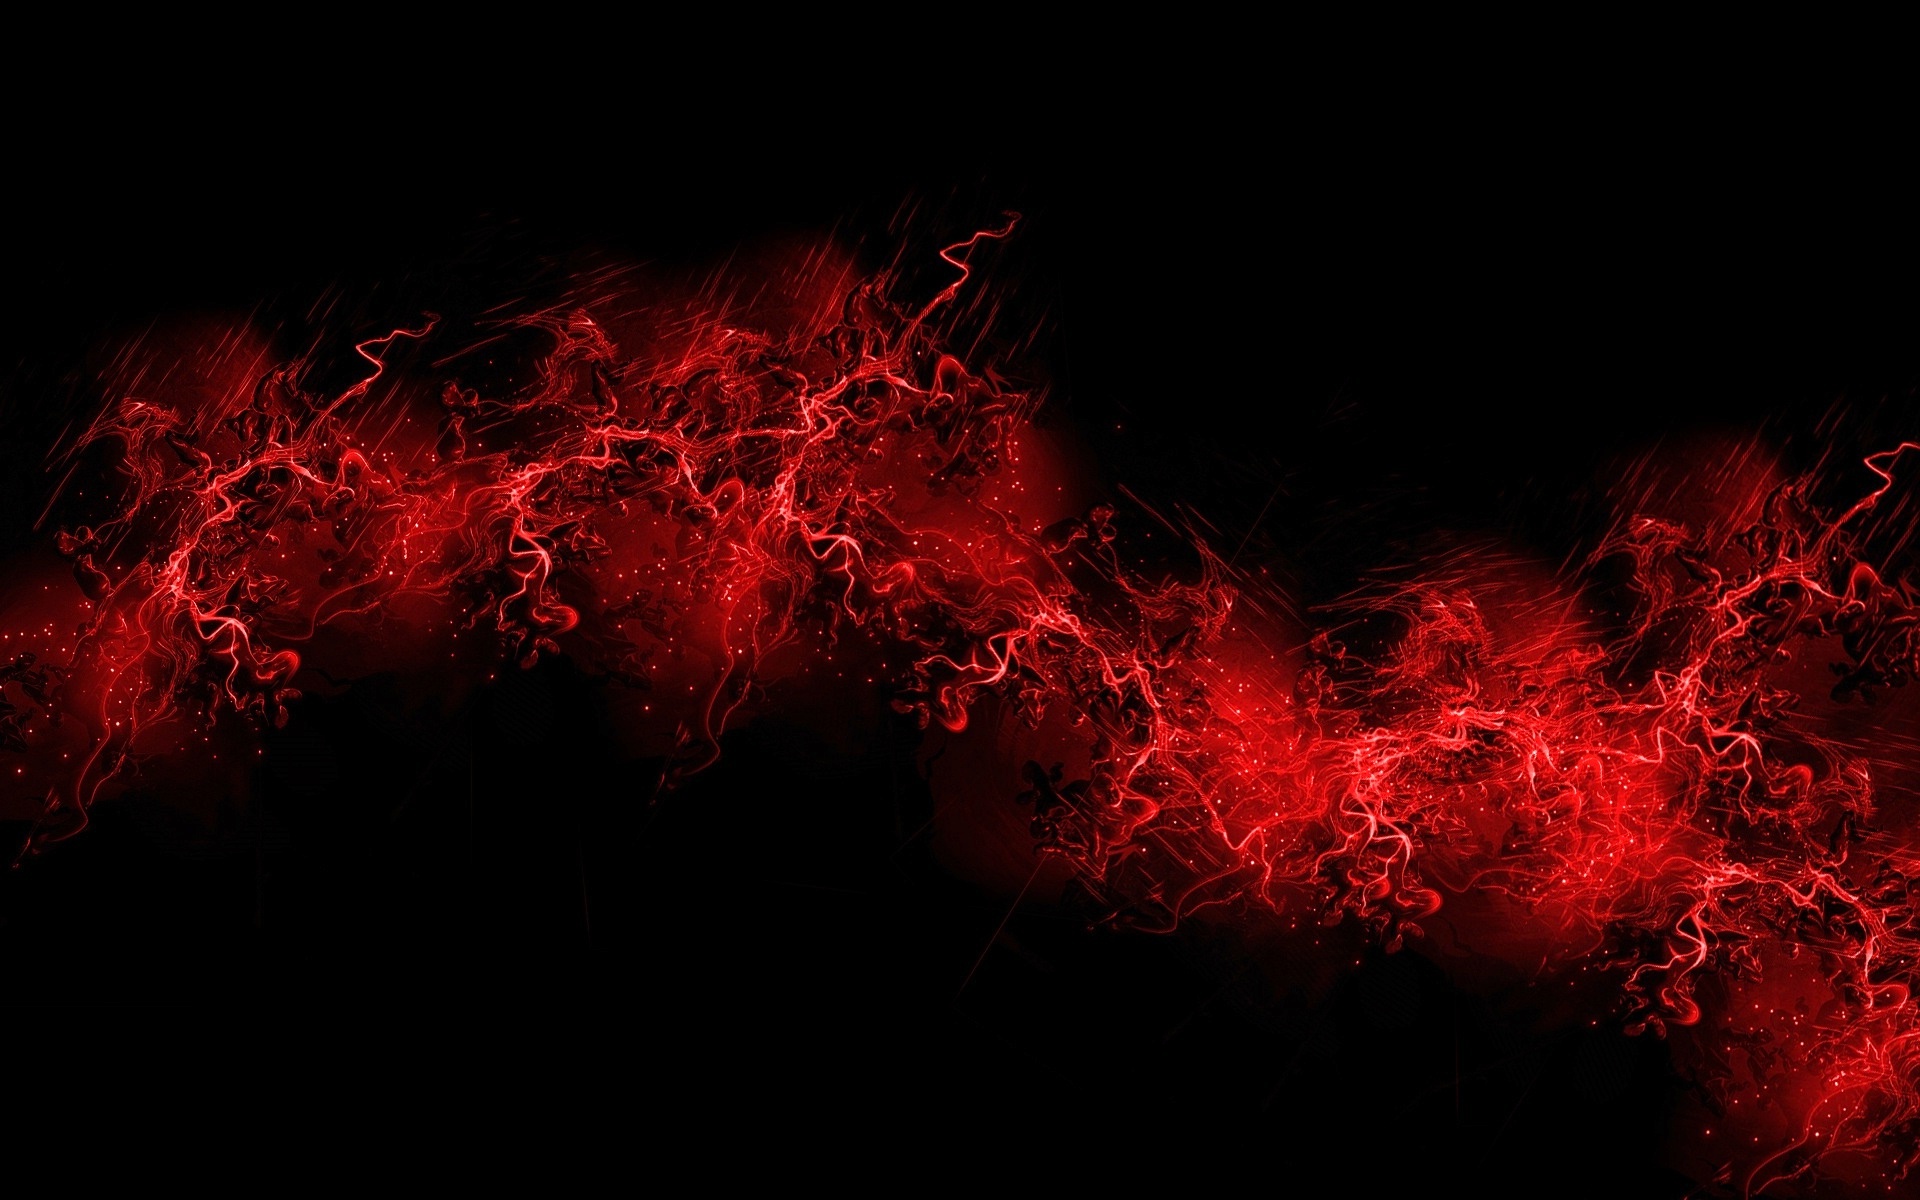 Free Black And Red Backgrounds Download Pixelstalknet